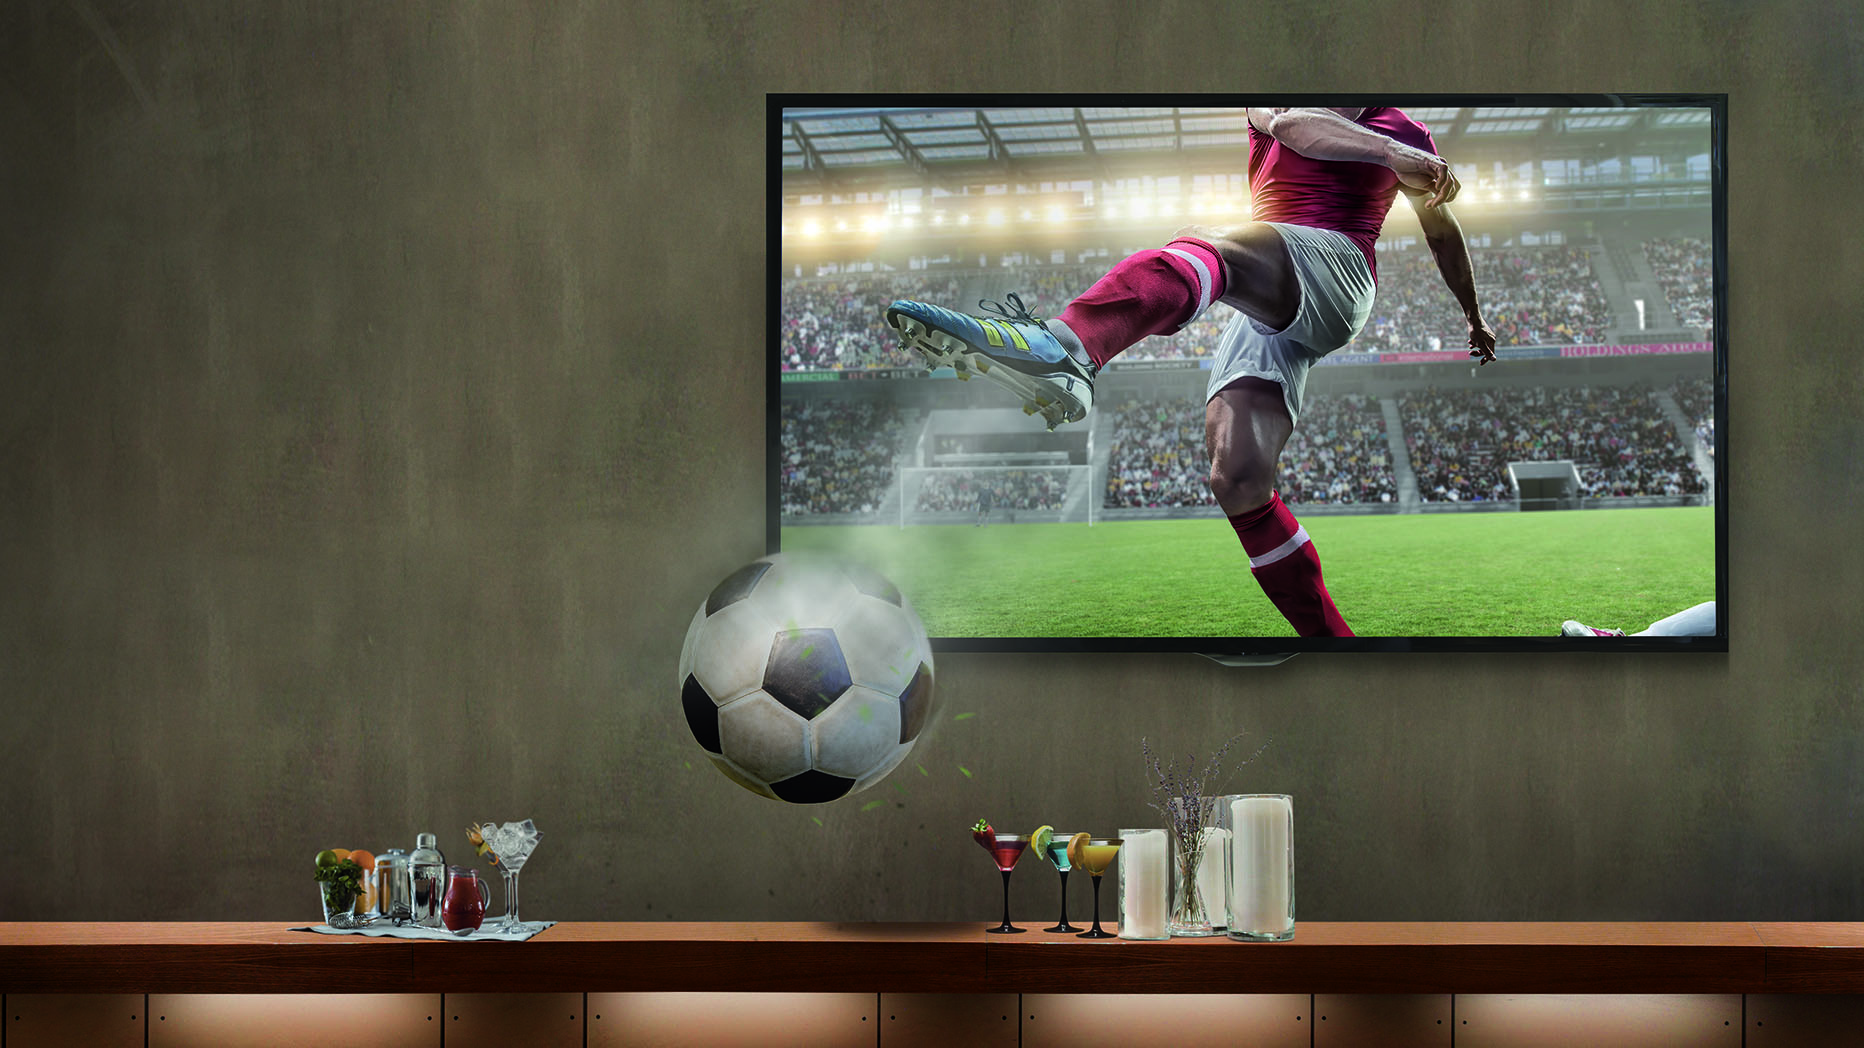 Vodafone retransmitirá el fútbol en 4K en bares, restaurantes y hoteles